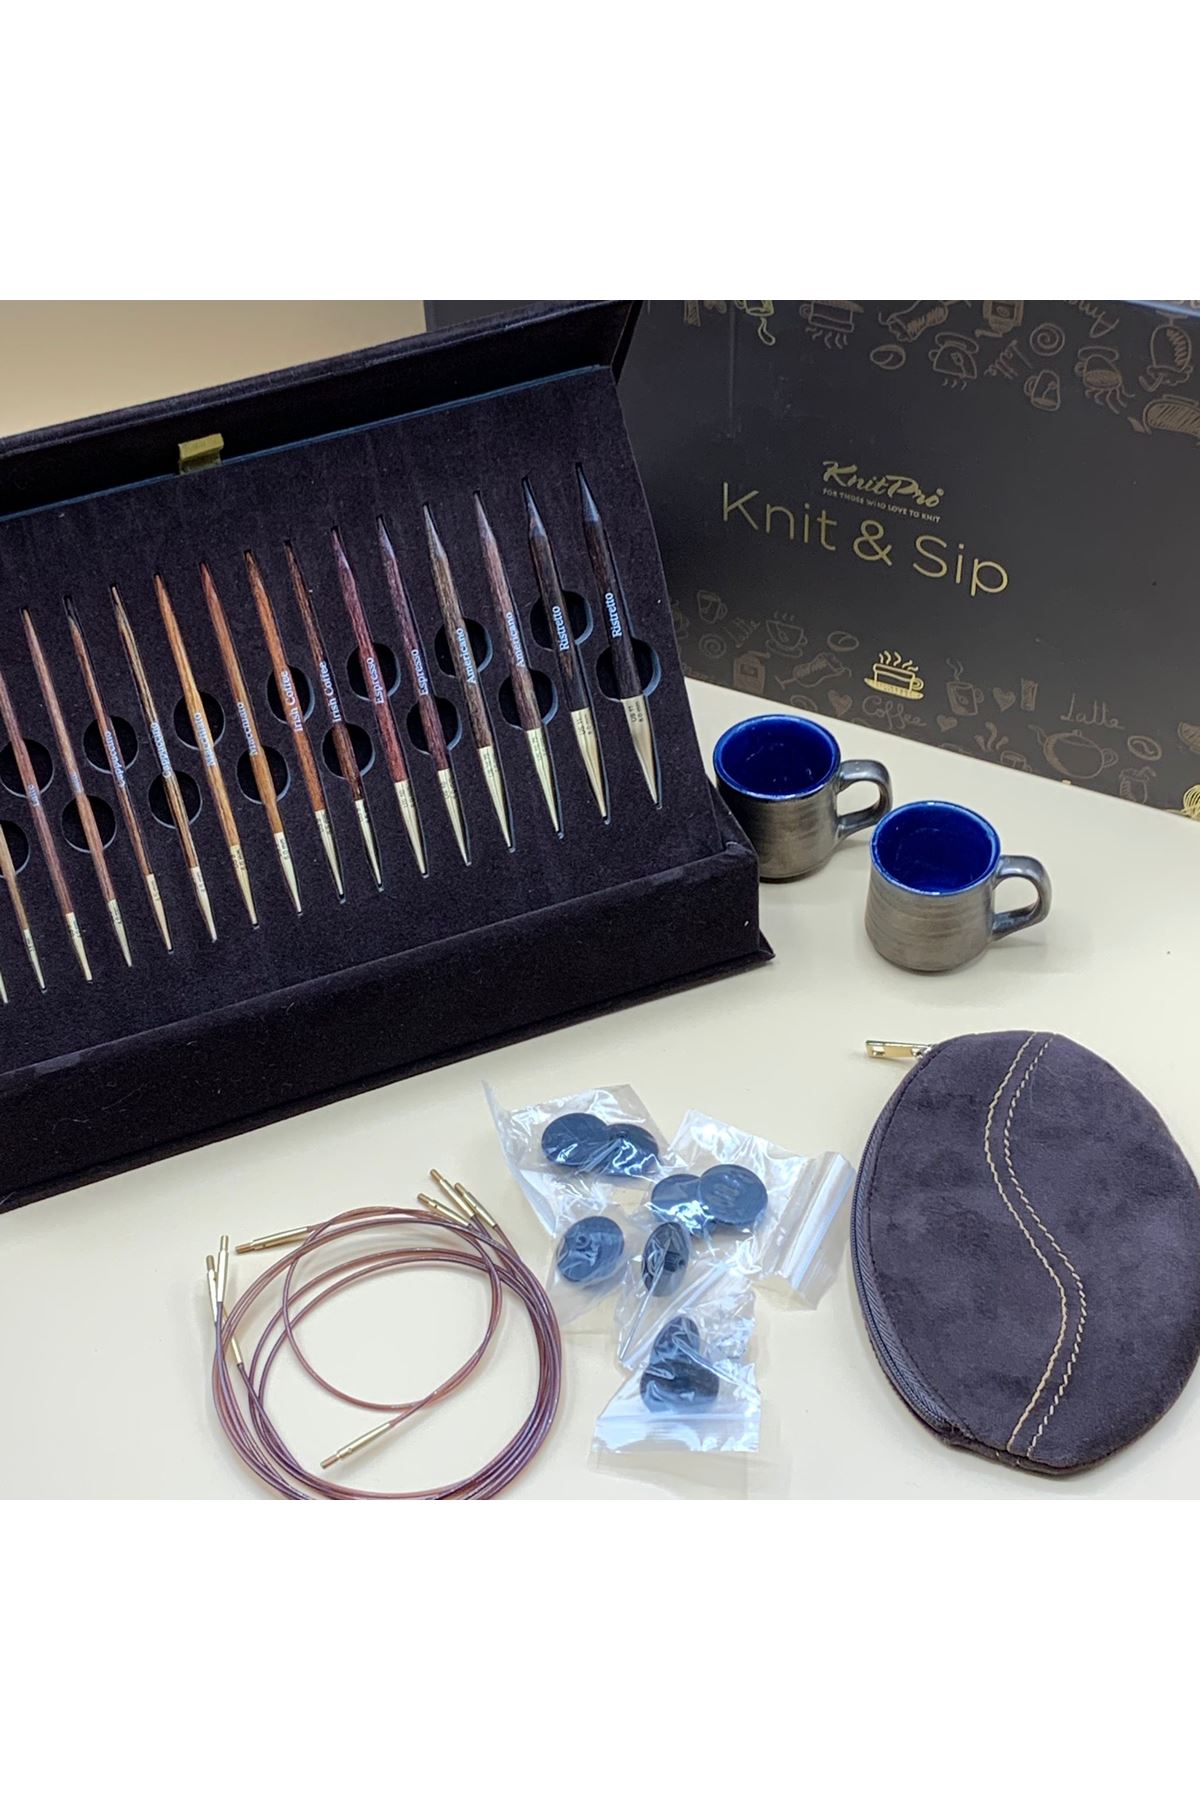 Knit Pro Knit and Sip Değiştirilebilir Misinalı Örgü Şişi Seti